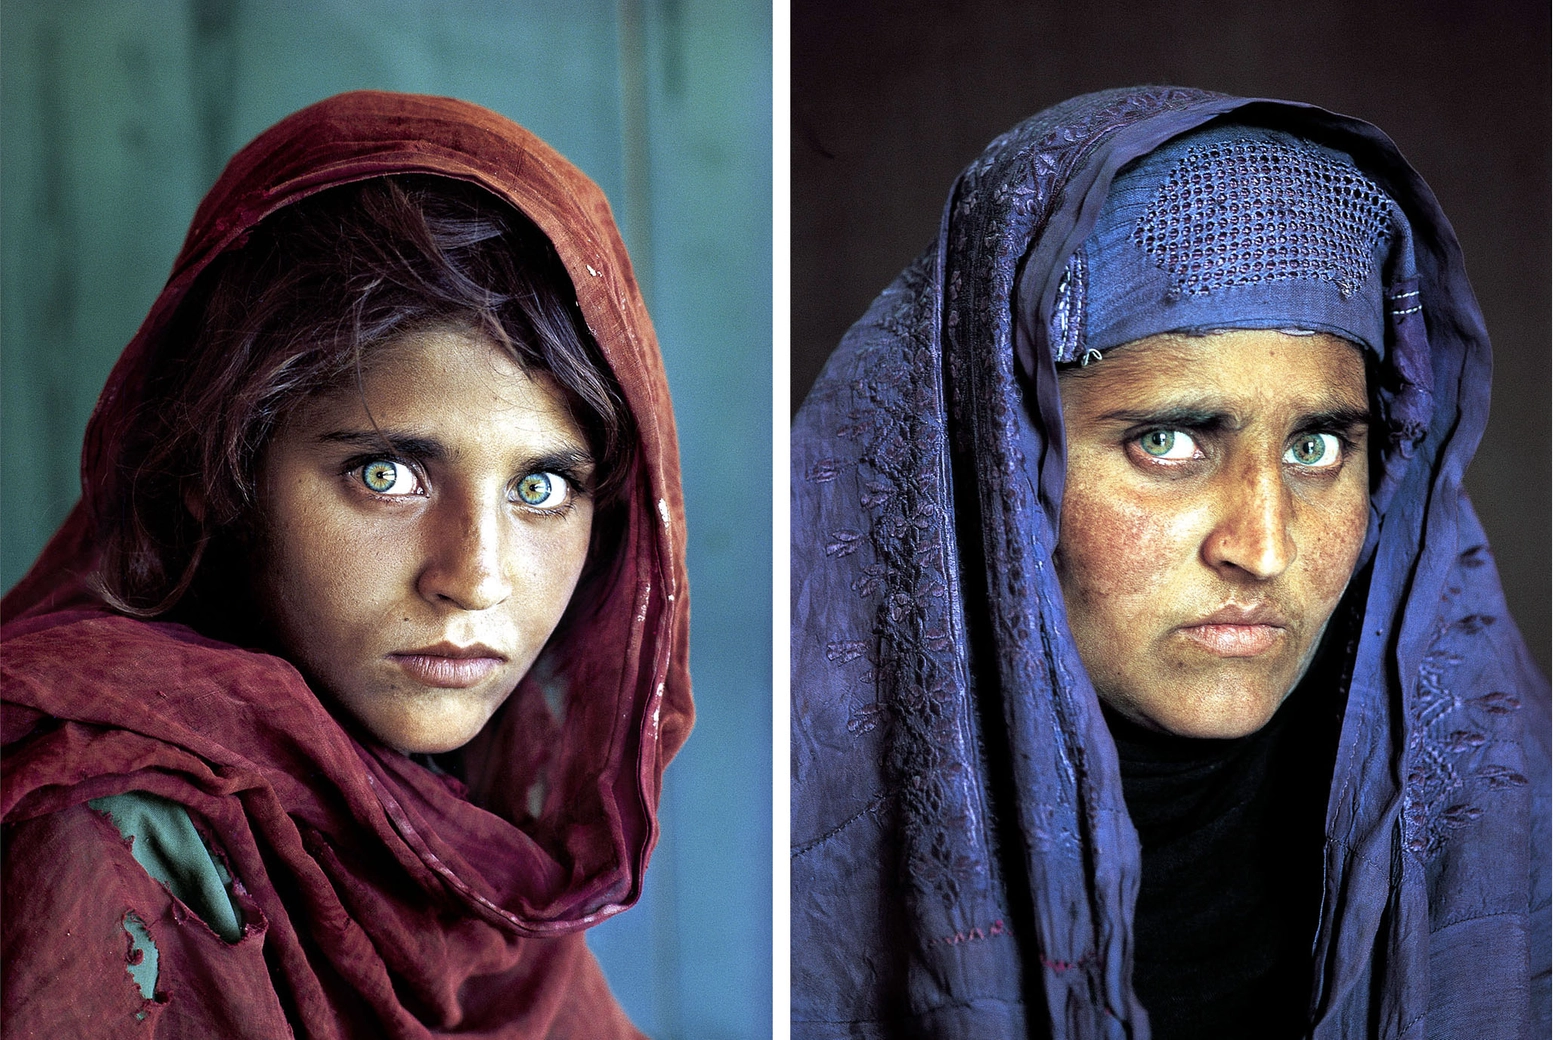 Sharbat Gula, ritratta da Steve McCurry nel 1984 e nel 2002 per il National Geographic